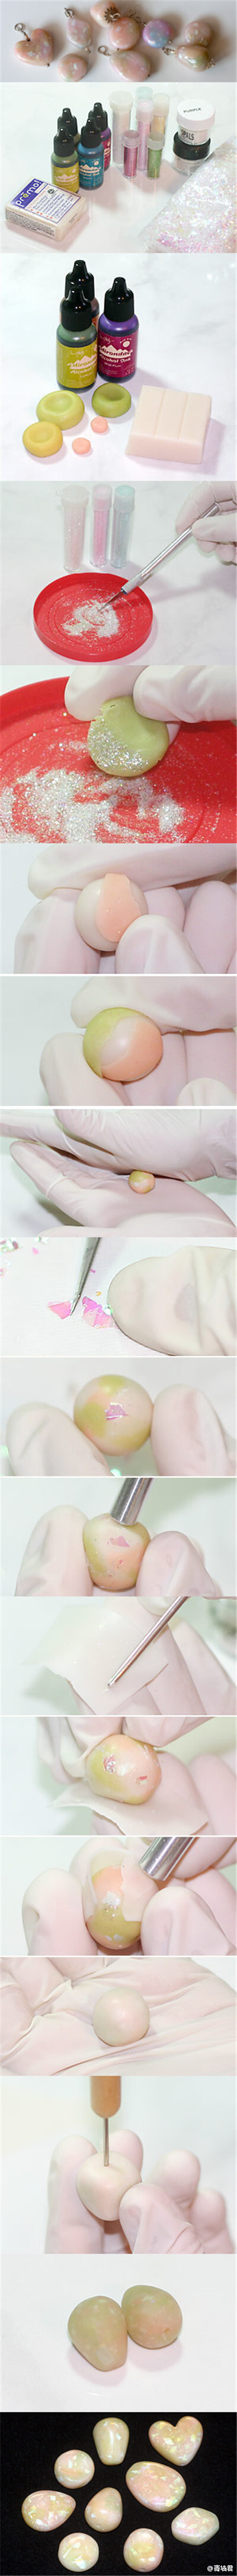 #Polymer Clay Tutorial—Faux Opal#用软陶人造欧泊。这个教程告诉大家，软陶能巧妙地模仿许多天然材料，欧泊就是其一，你甚至能用它做出各种你喜欢的宝石颜色。这里展示了如何制作粉色欧泊，你需要用到彩色和半透明…